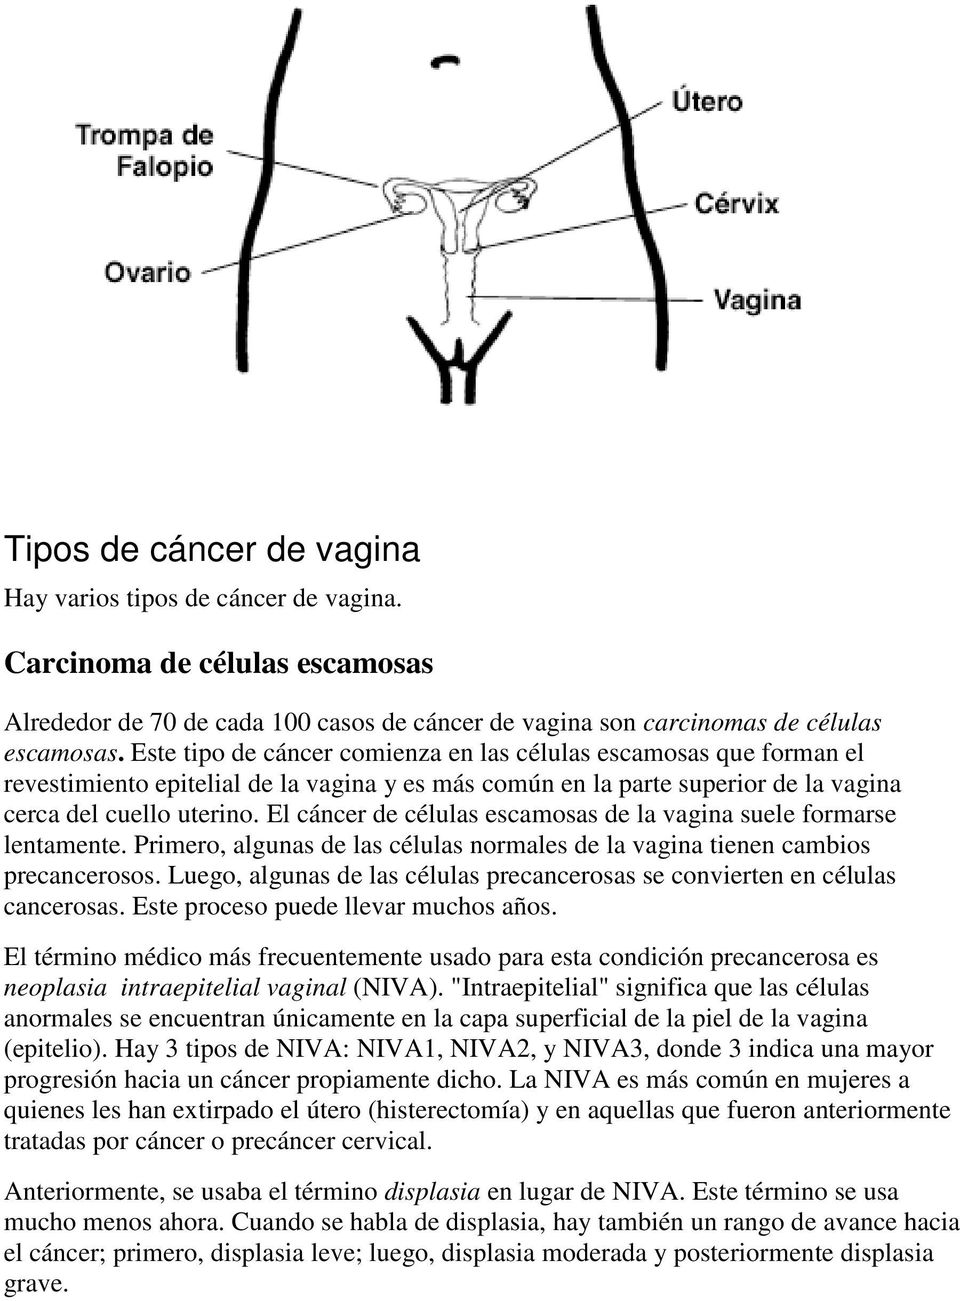 El cáncer de células escamosas de la vagina suele formarse lentamente. Primero, algunas de las células normales de la vagina tienen cambios precancerosos.